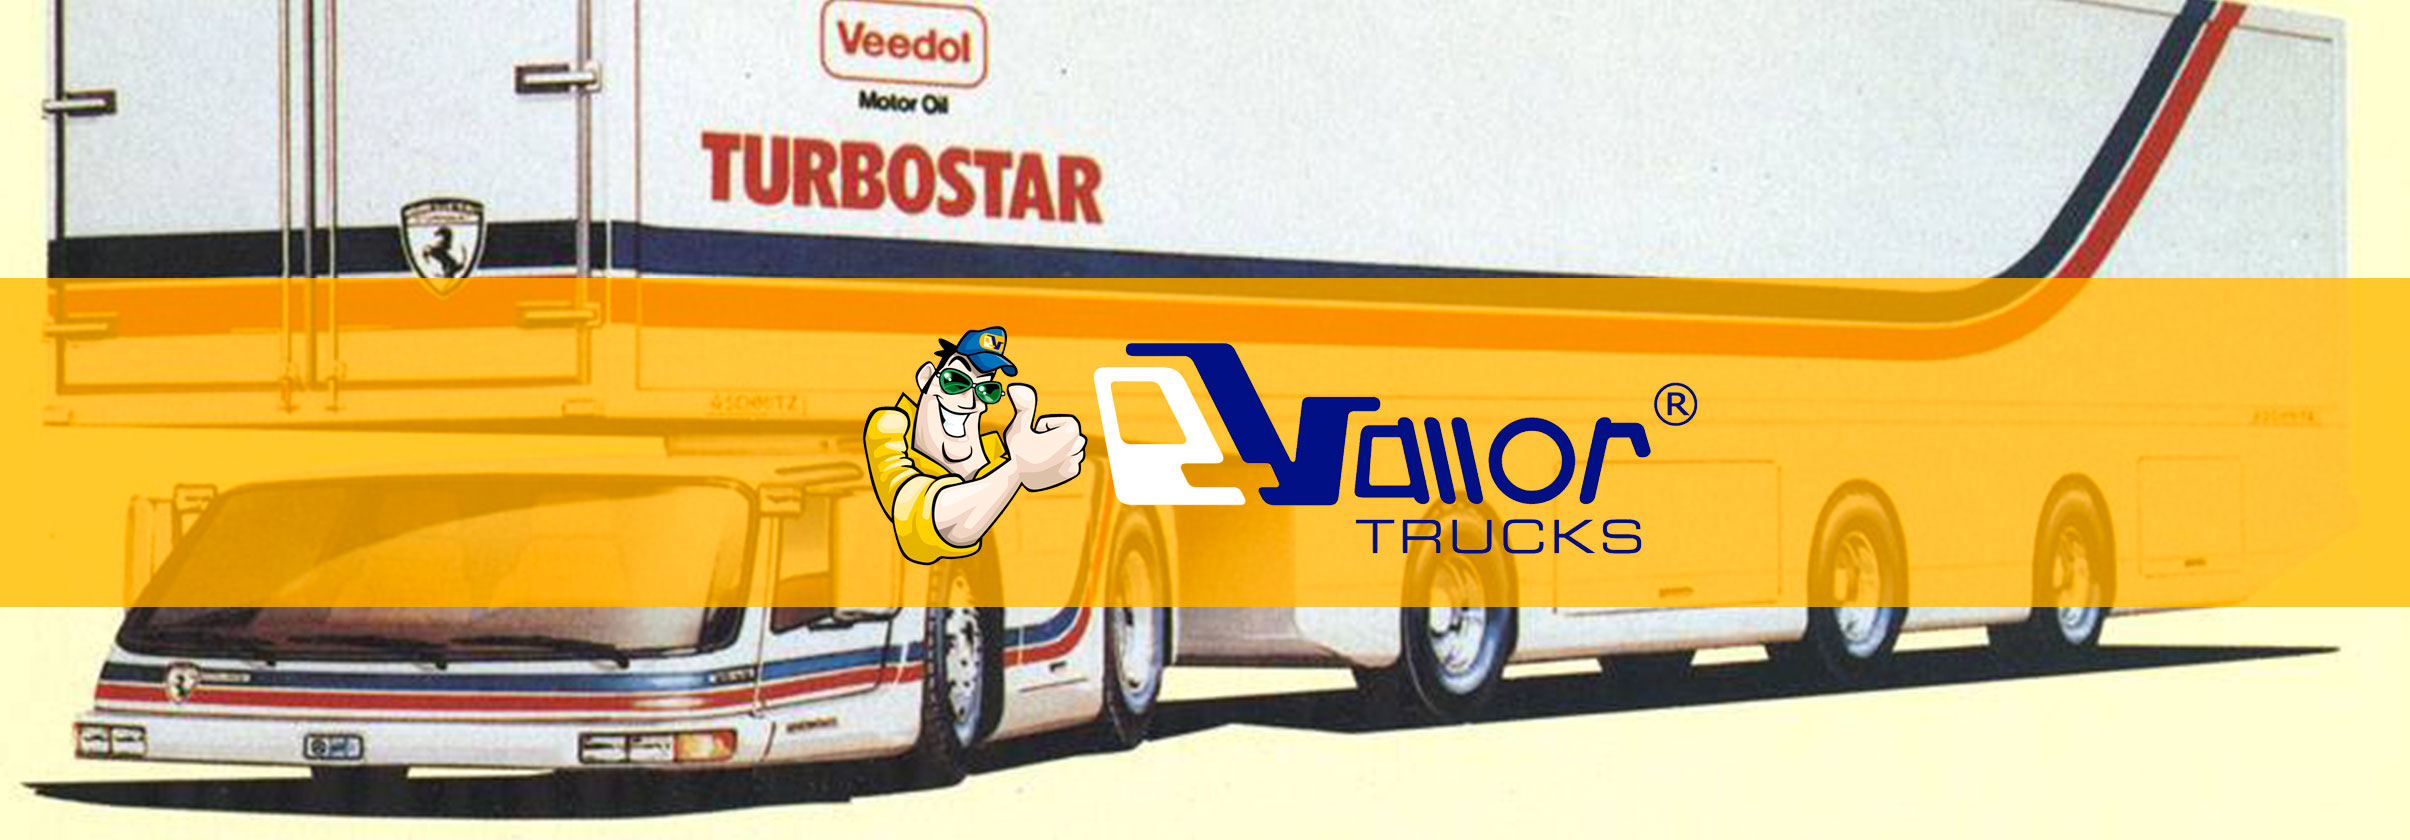 Camiones De Segunda Mano Vallor Trucks El Diseno Rompedor Del Steinwinter Supercargo